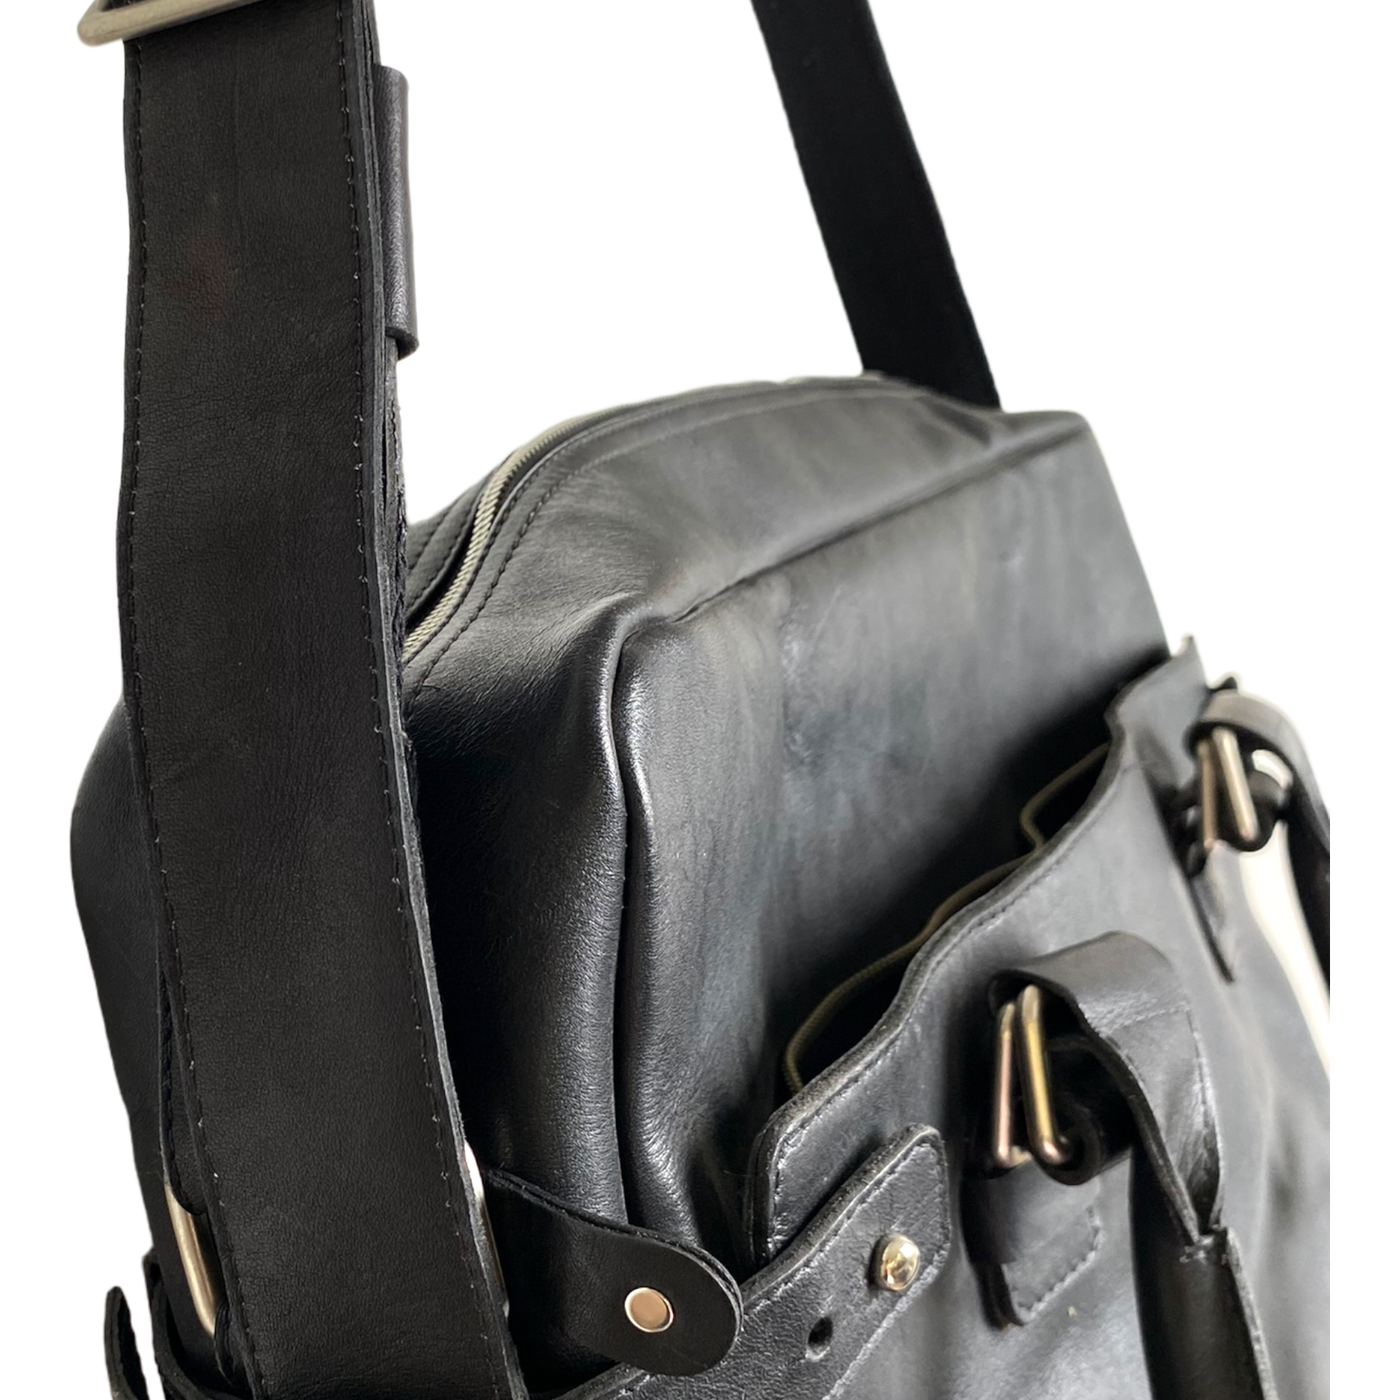 Harold's Bags leather shoulder bag medium, black